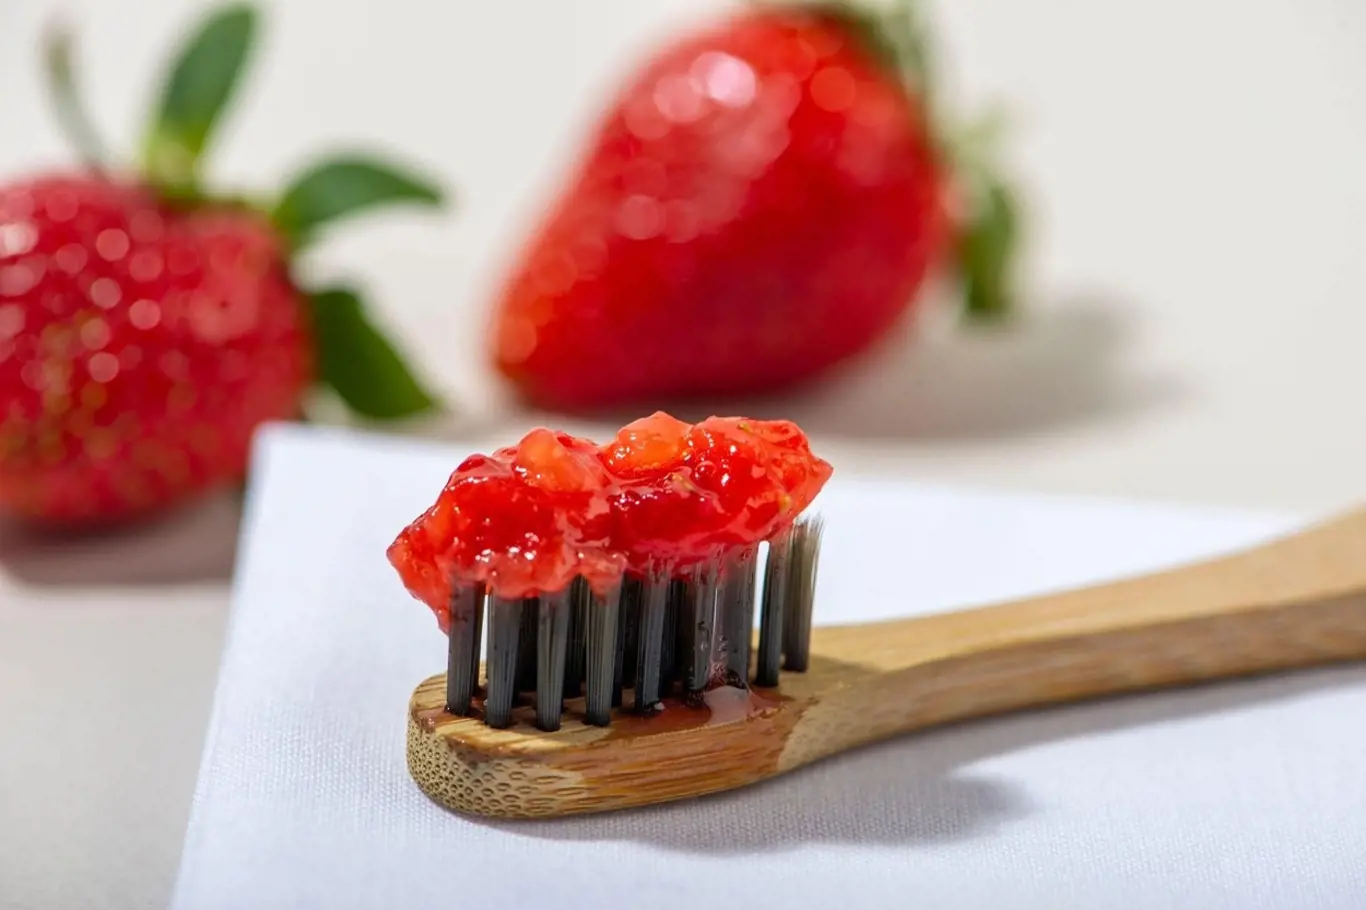 Zatímco jahody mají bělící účinky, jedlá soda funguje jako „bruska“, která z chrupu odstraňuje ulpělé nečistoty, bakterie a zubní plak.